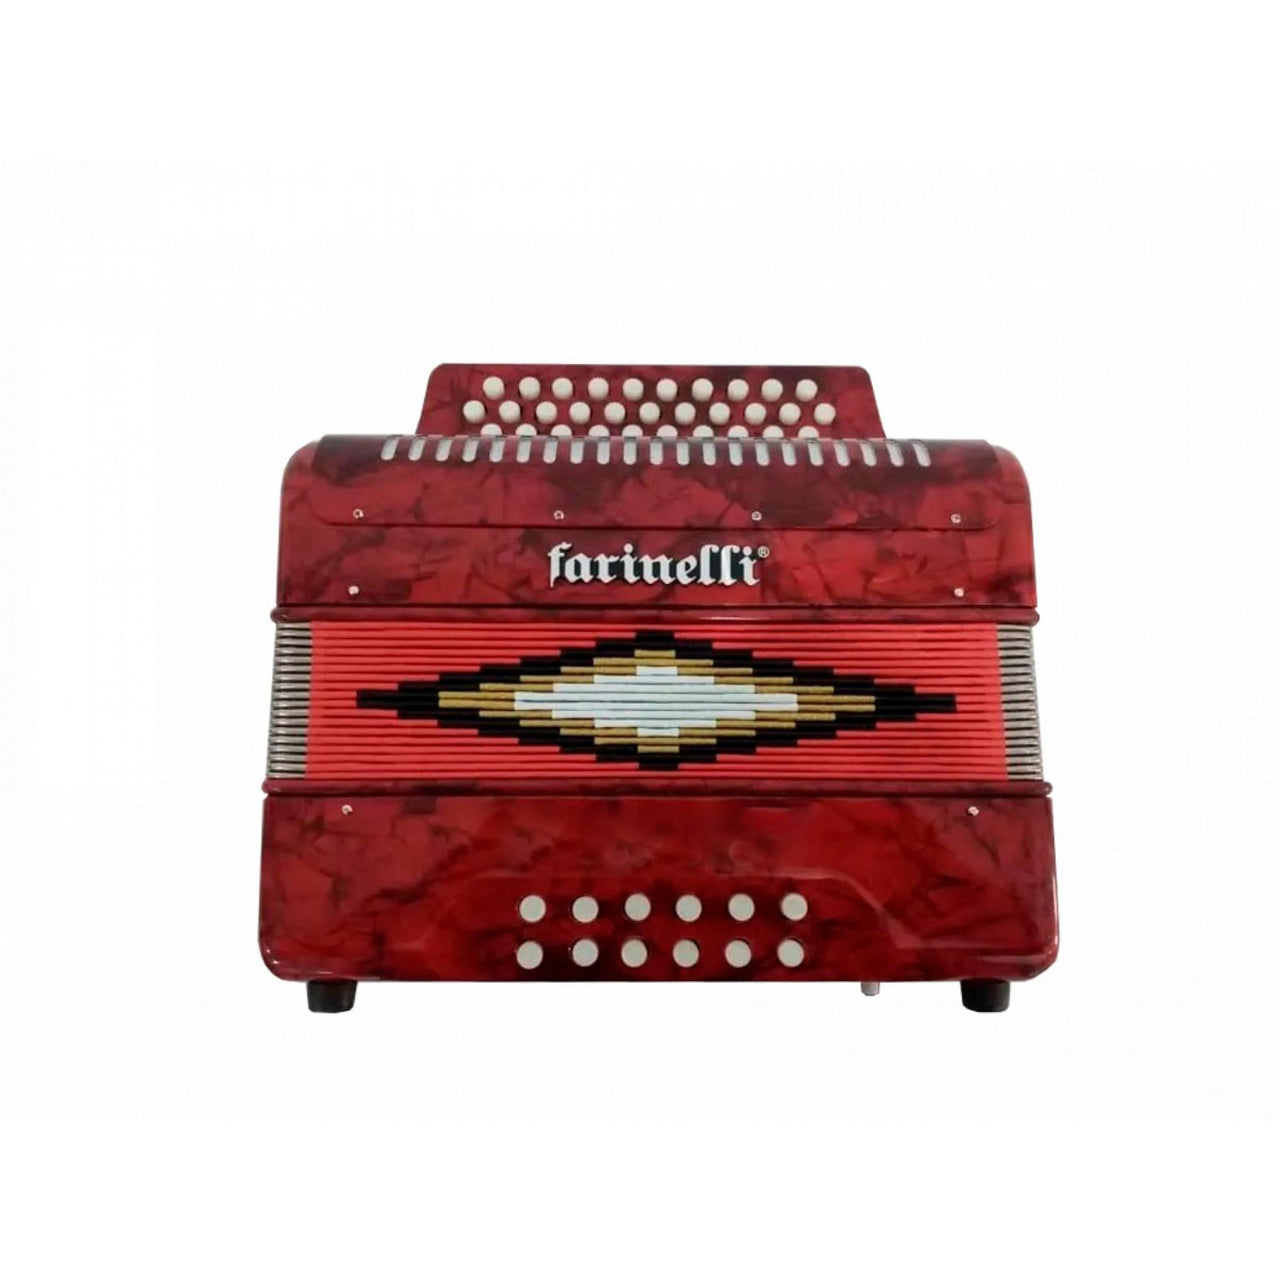 Acordeon De Botones Farinelli Premium 3012sir 31 Botones – Musicales Doris